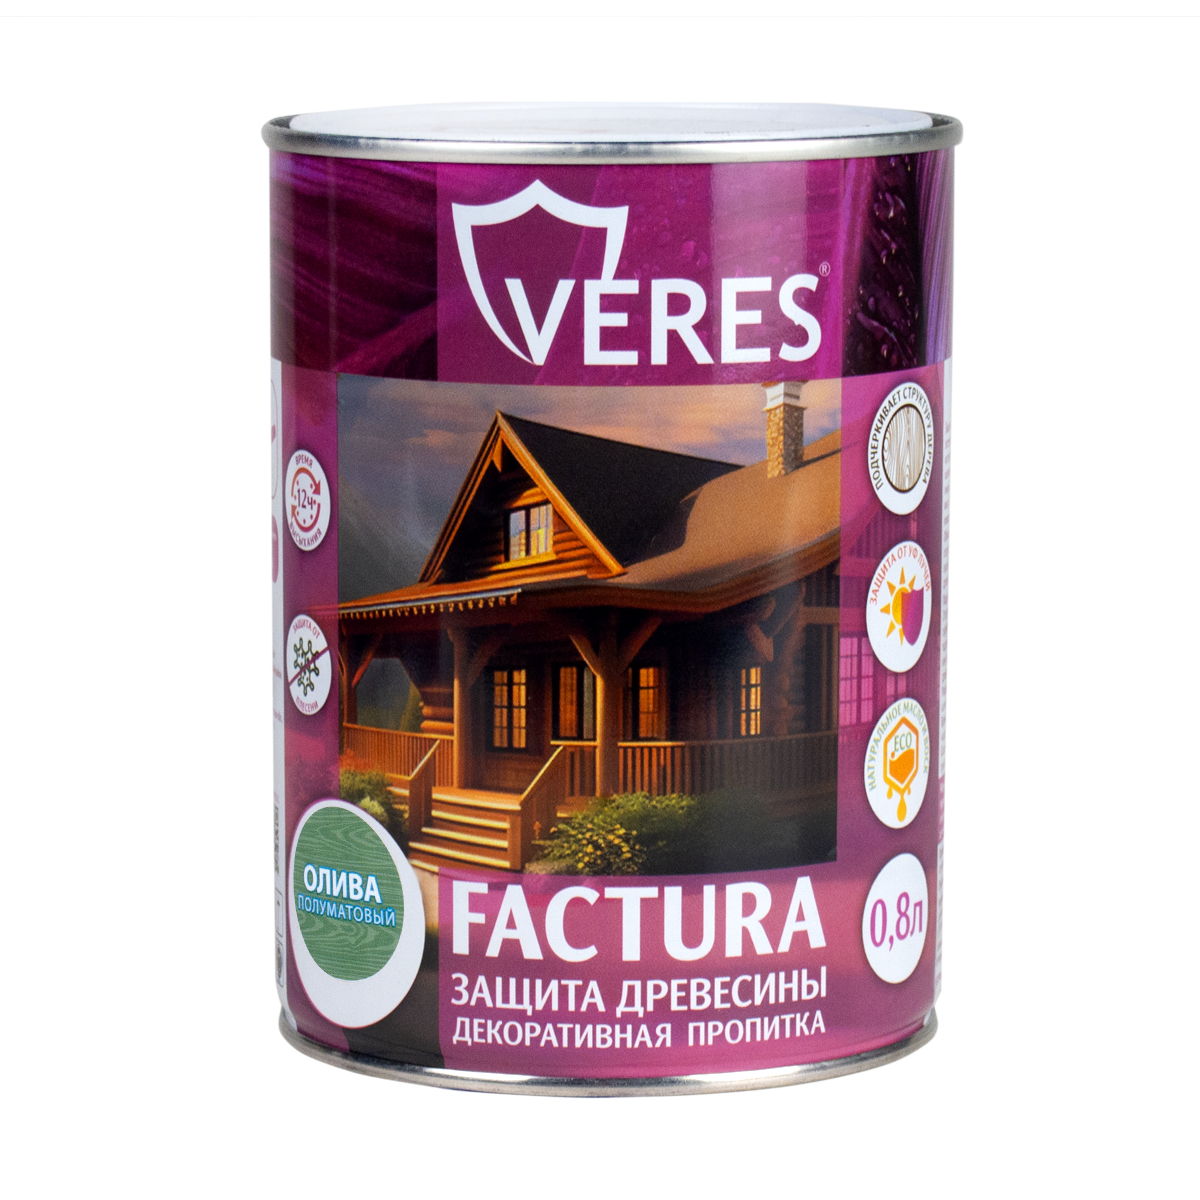 Декоративная пропитка для дерева Veres Factura полуматовая 0 8 л олива, VR-092